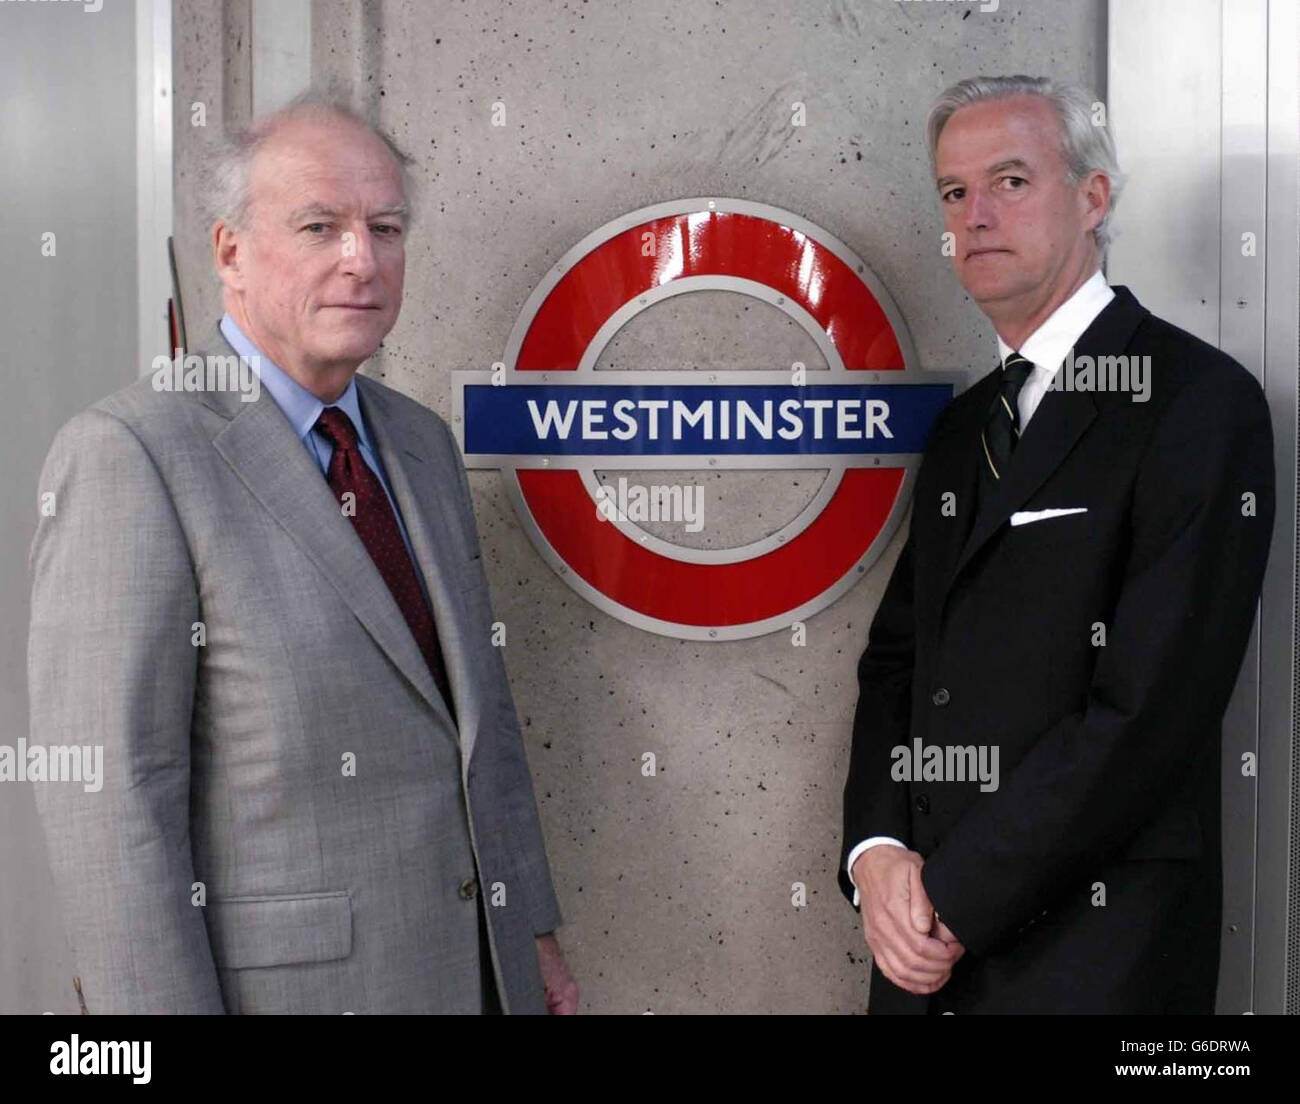 Le commissaire aux transports de Londres, Bob Kiley (à gauche) et le directeur général du métro de Londres, Tim O'Toole, sur la plate-forme de la station de métro Westminster.* ils étaient là pour marquer la remise officielle, à partir de minuit ce soir, de la gestion du métro du gouvernement au transport pour Londres. Banque D'Images